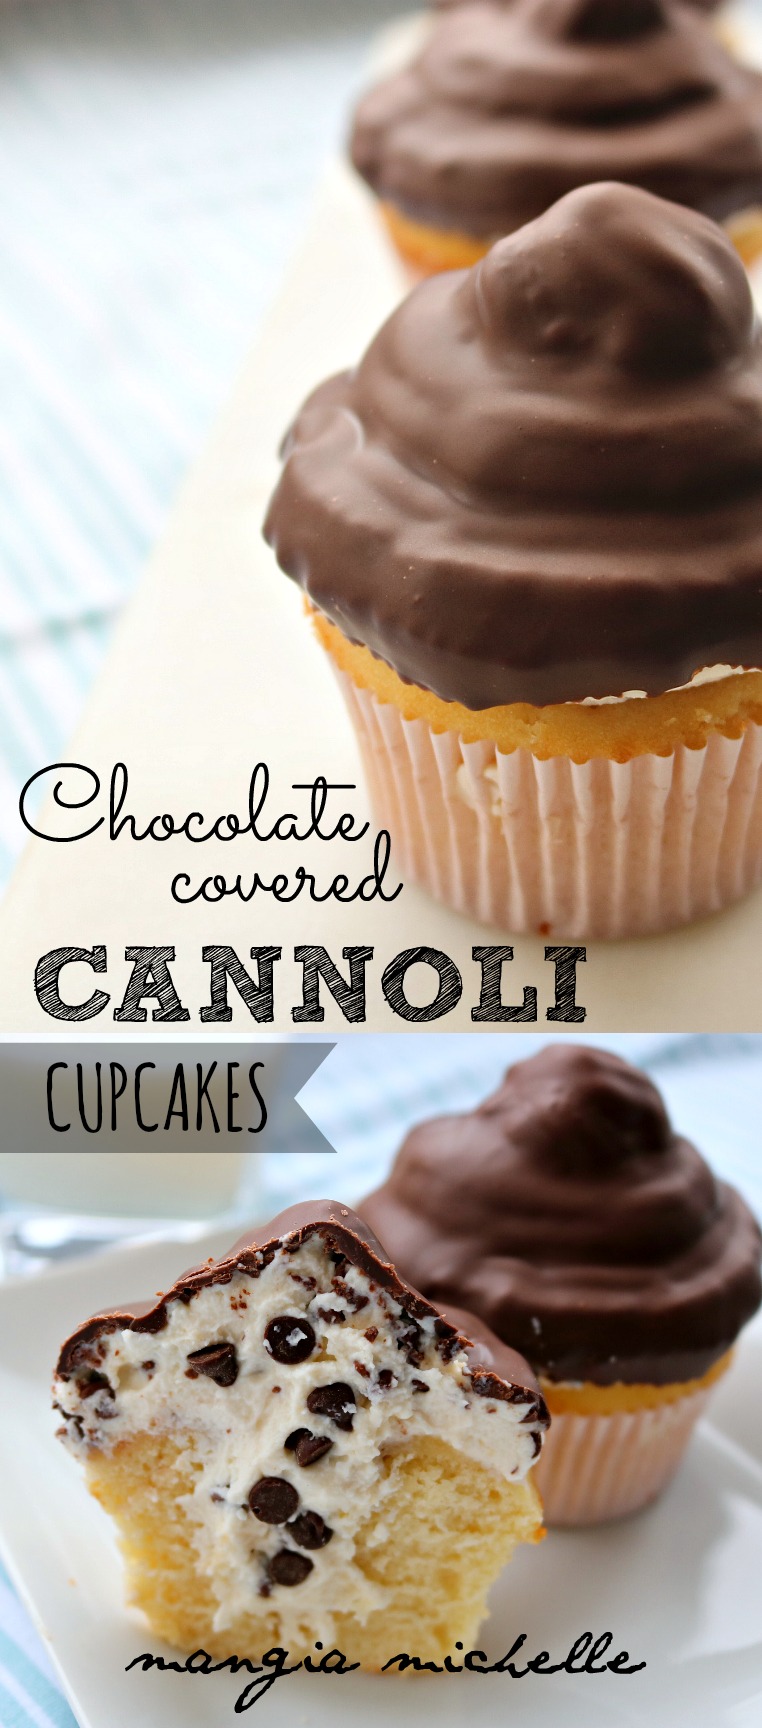  Cannoli Cupcakes mit Schokoladenüberzug